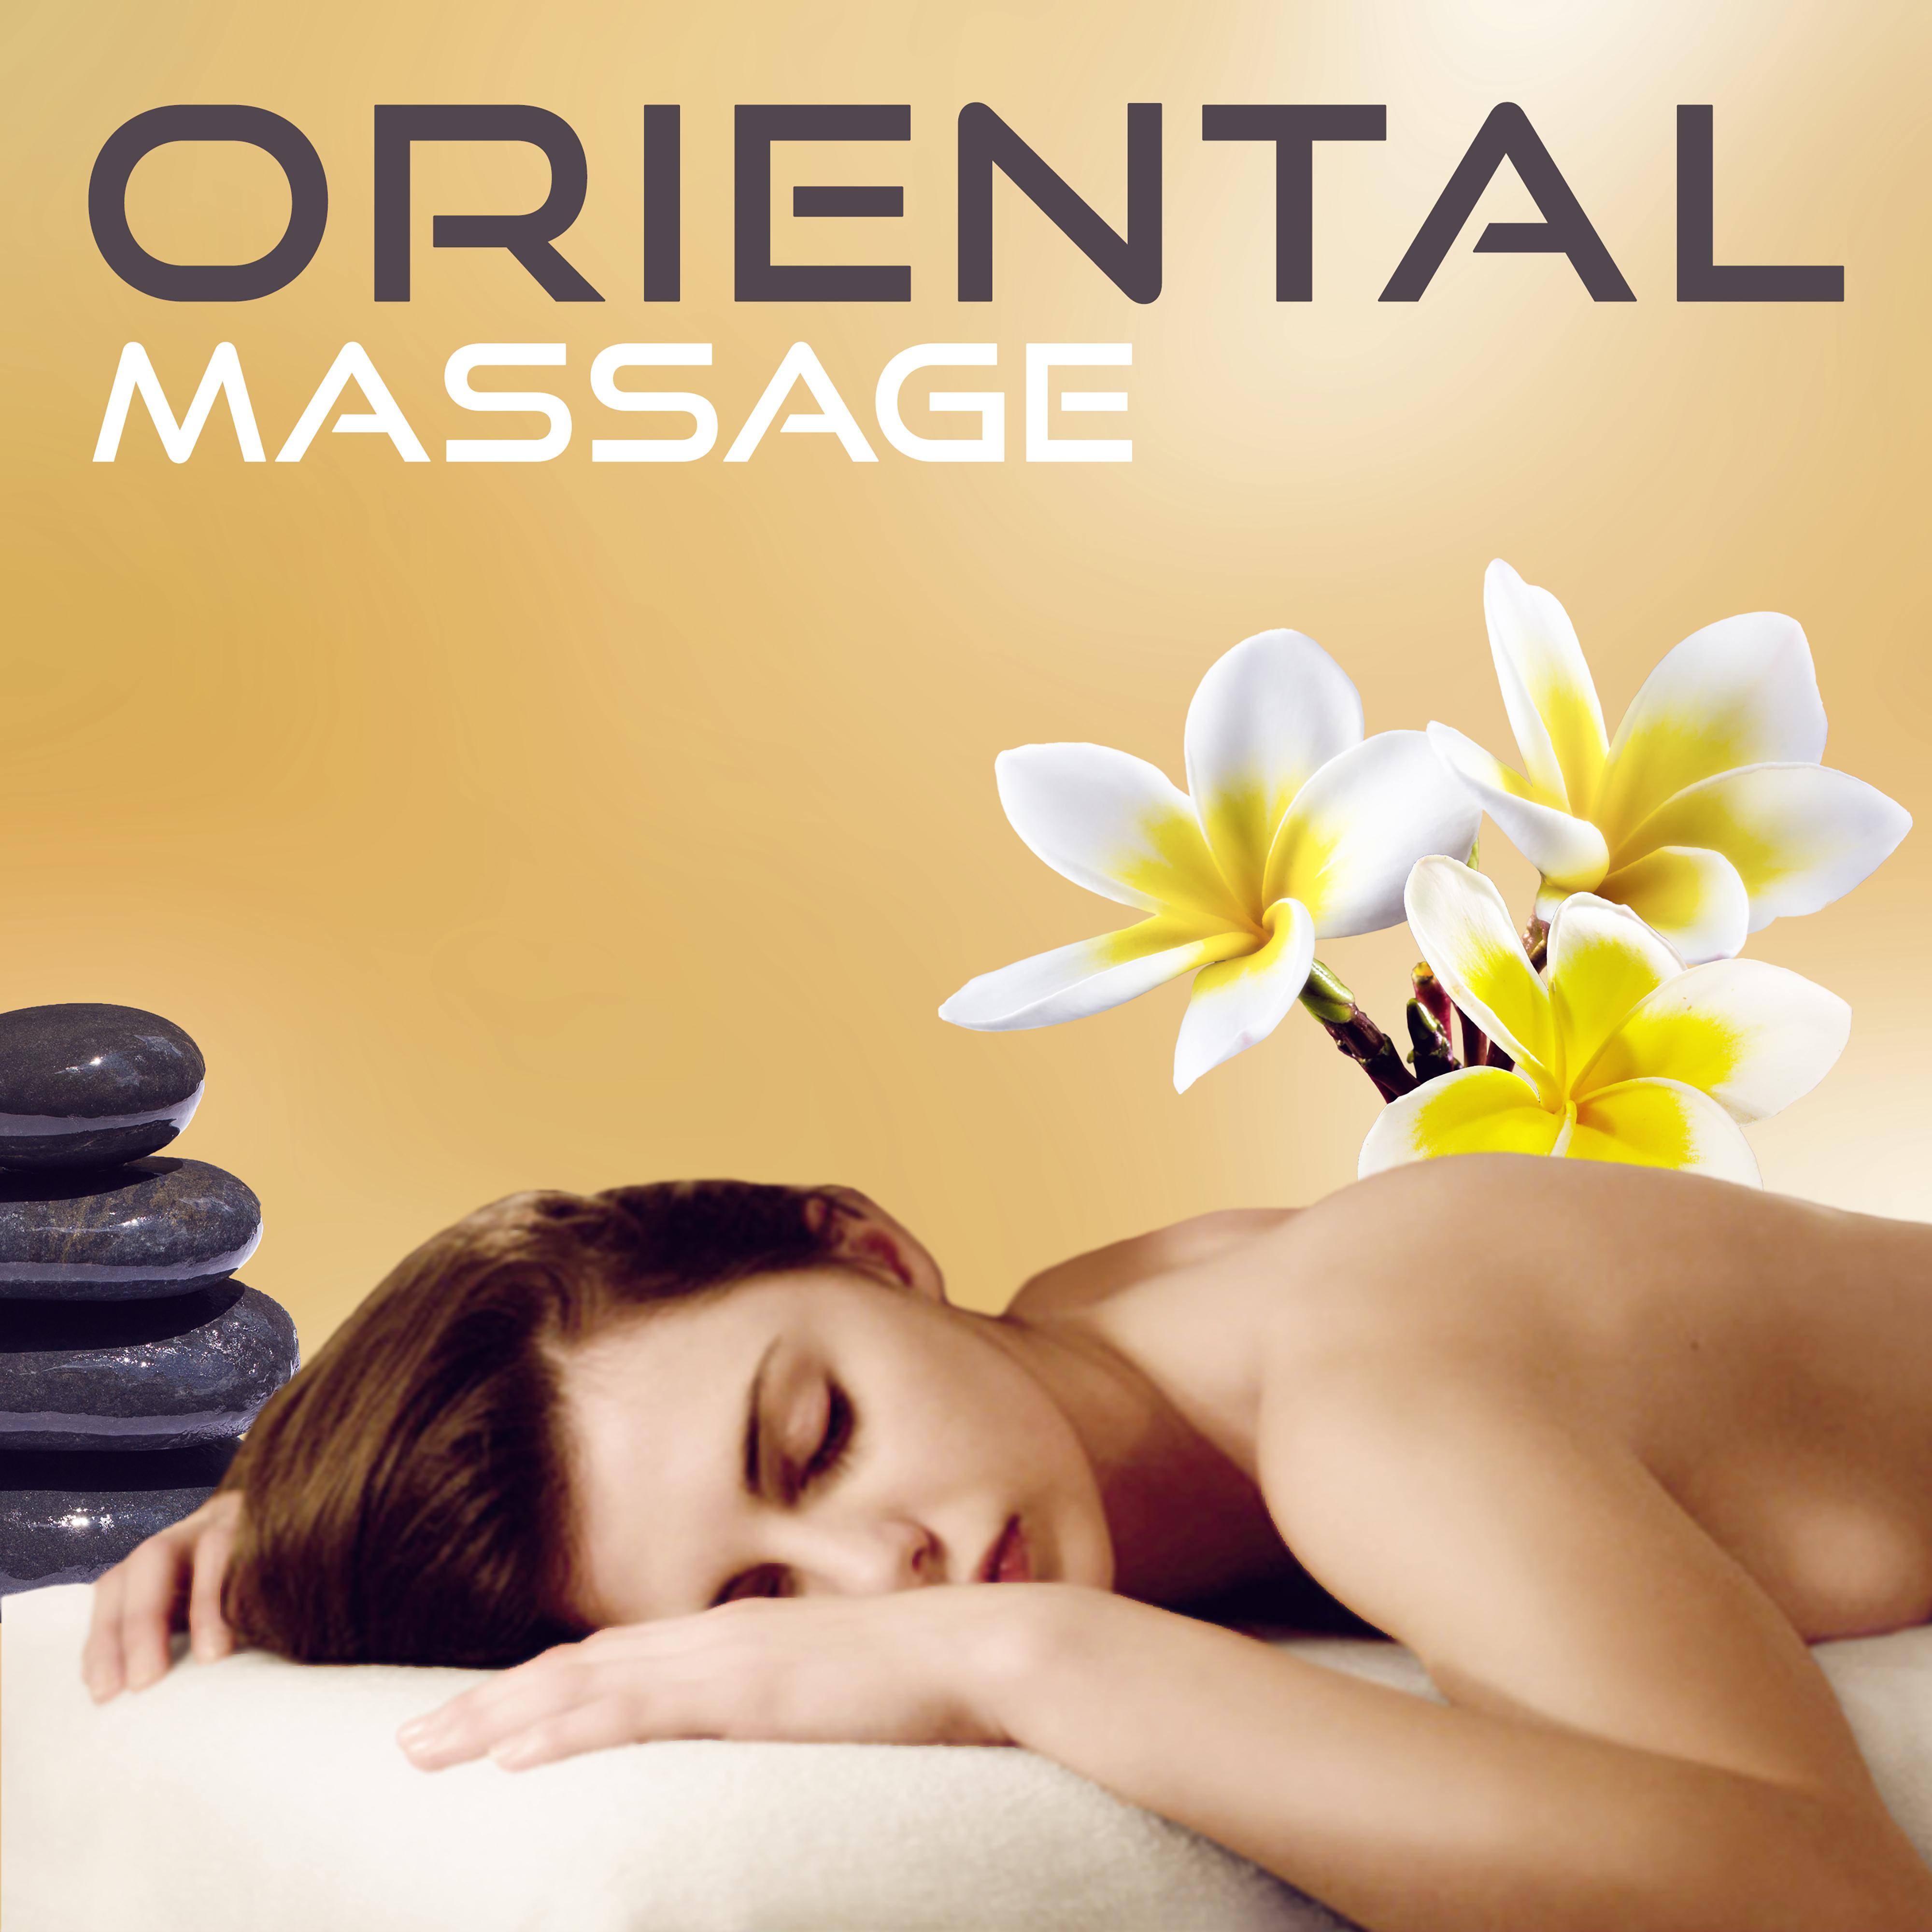 Oriental Massage  Meditation Spa, Flute Music, Deep Rest, Asian Massage, Sounds for Spa, Wellness